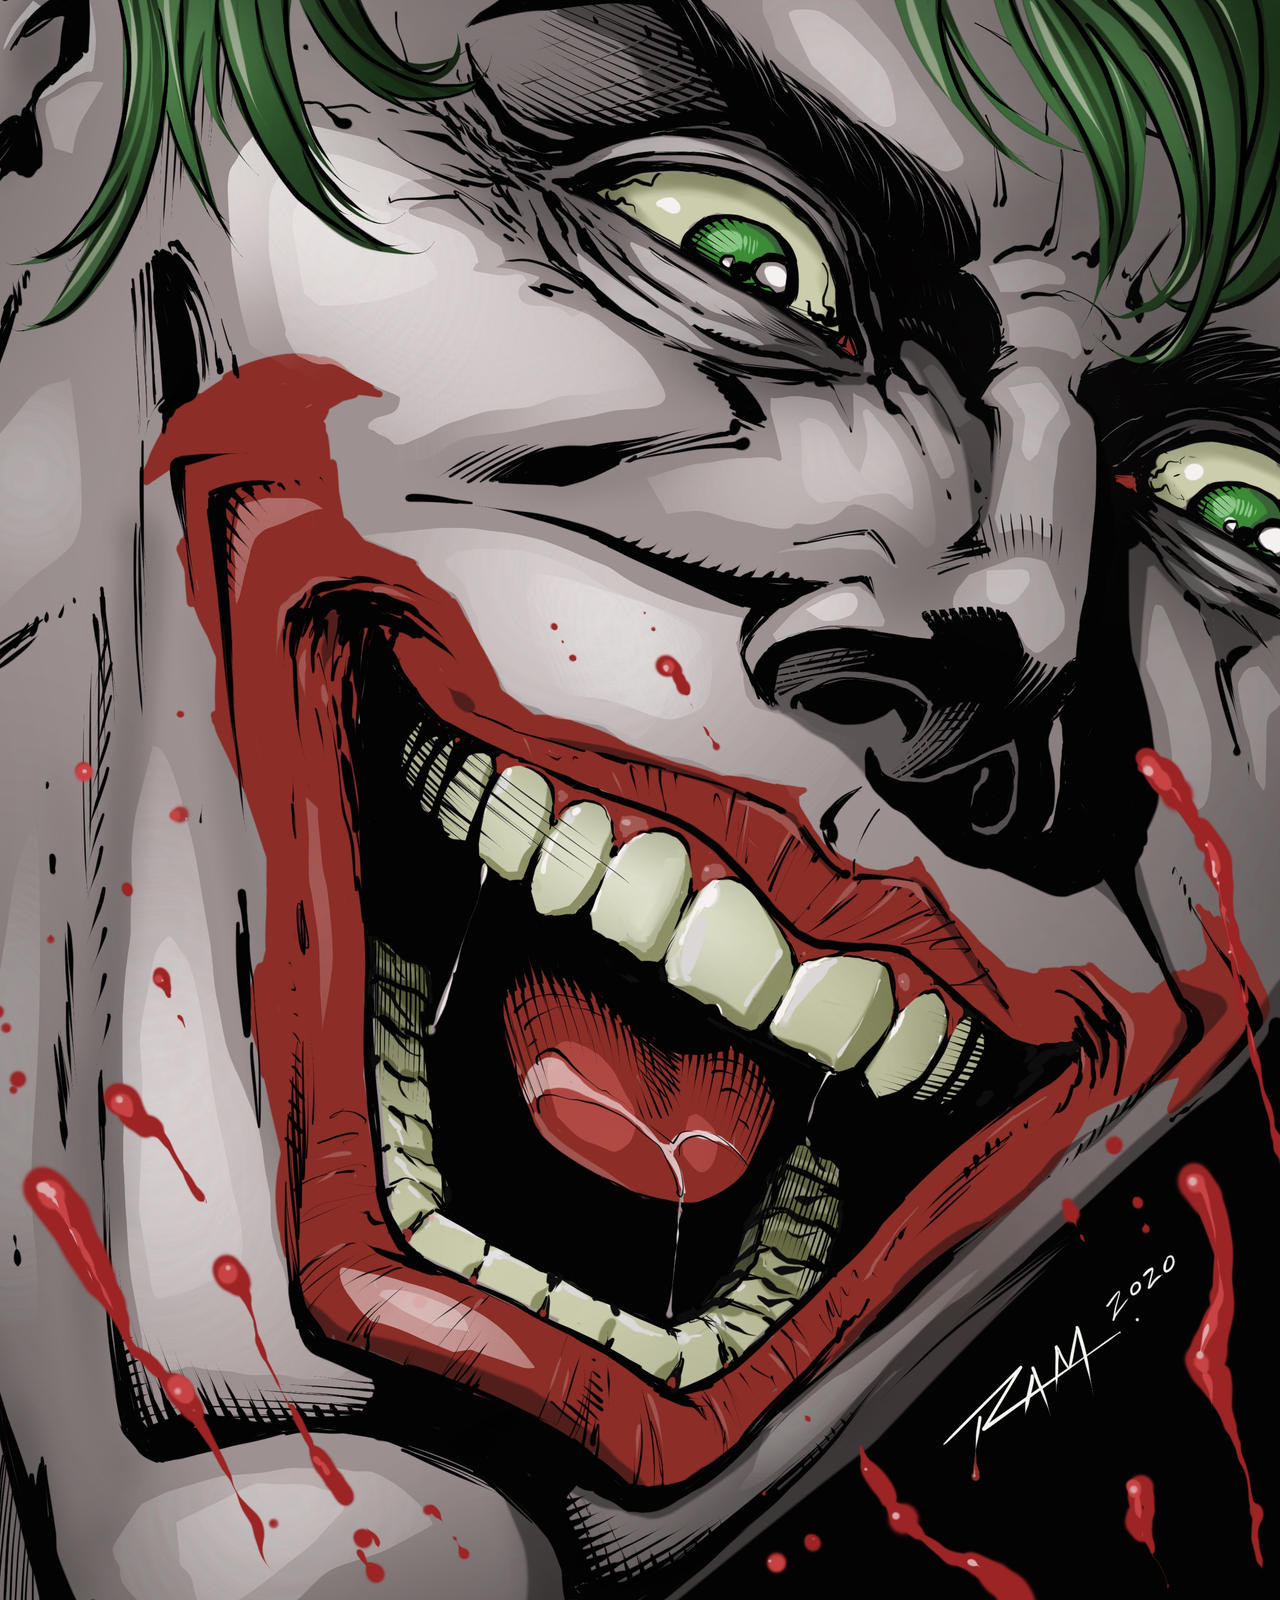 The Joker by robertmarzullo on DeviantArt